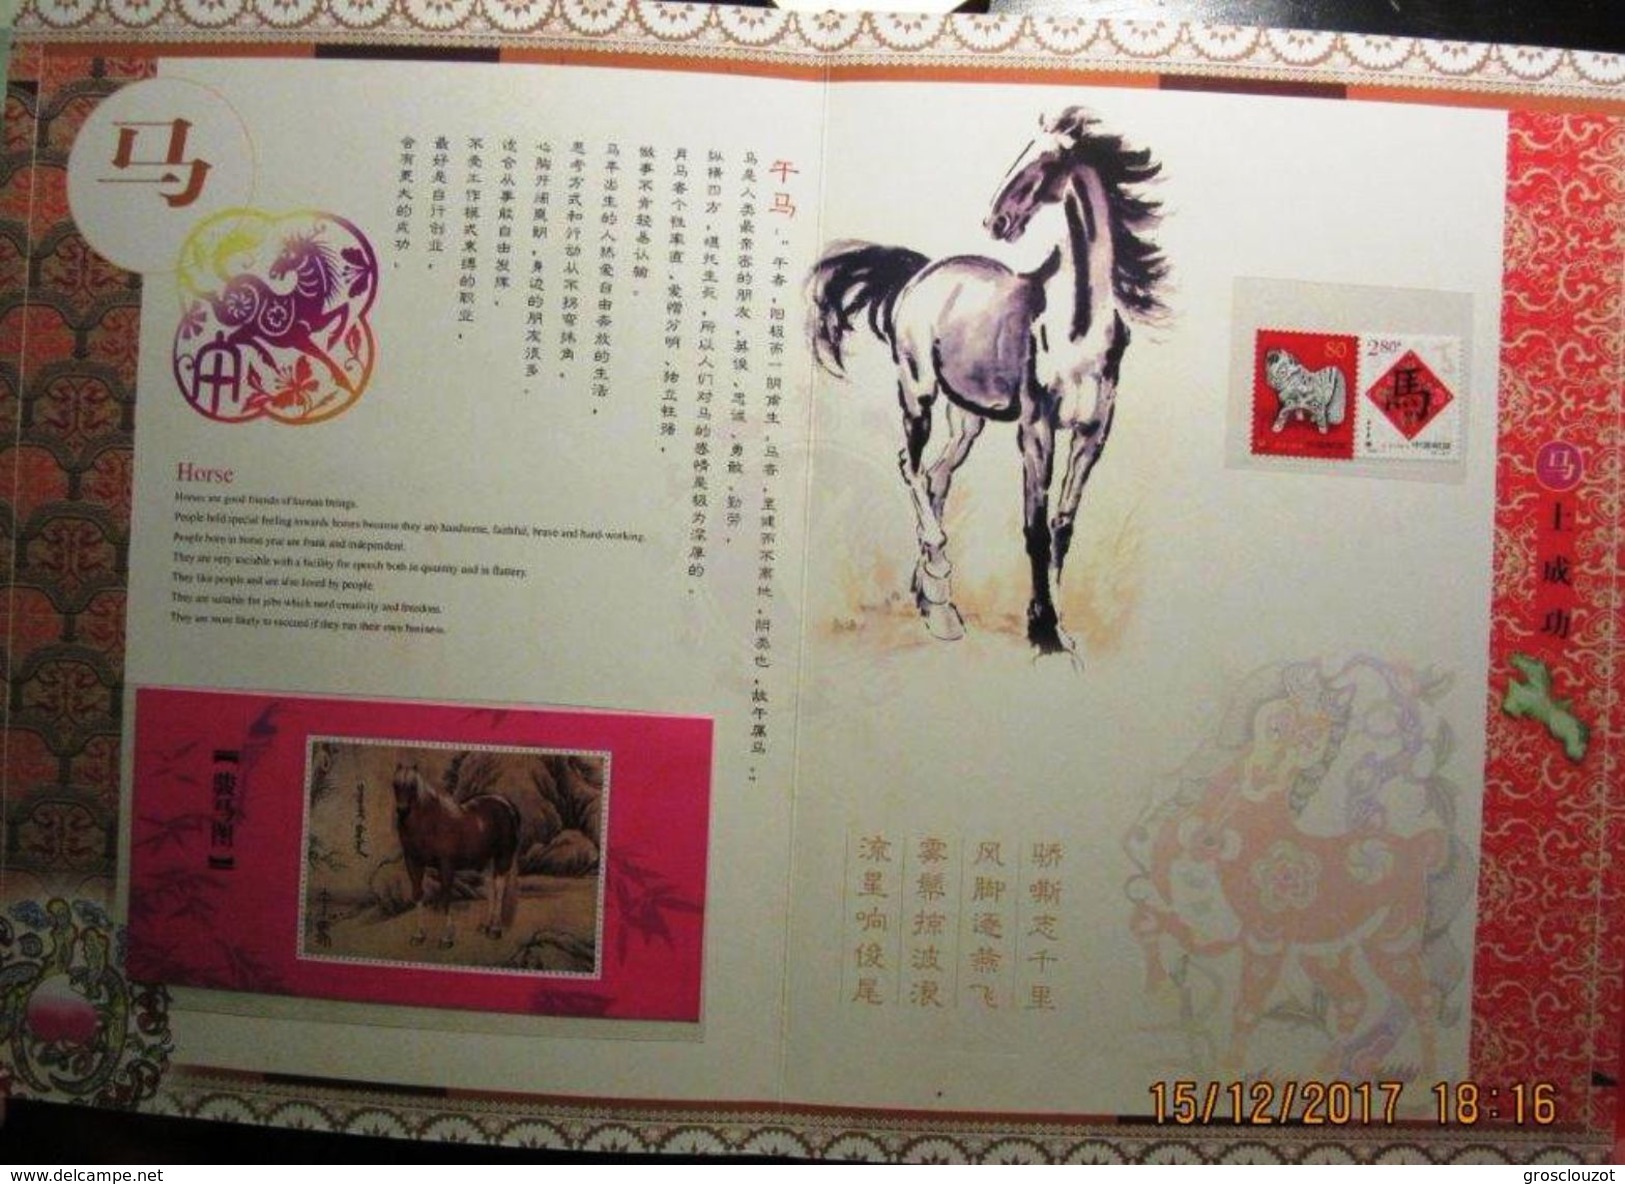 Cina Speciale Album / libro cartonato *** LUX con emissioni filateliche e foglietti relativi ai 12 animali lunari